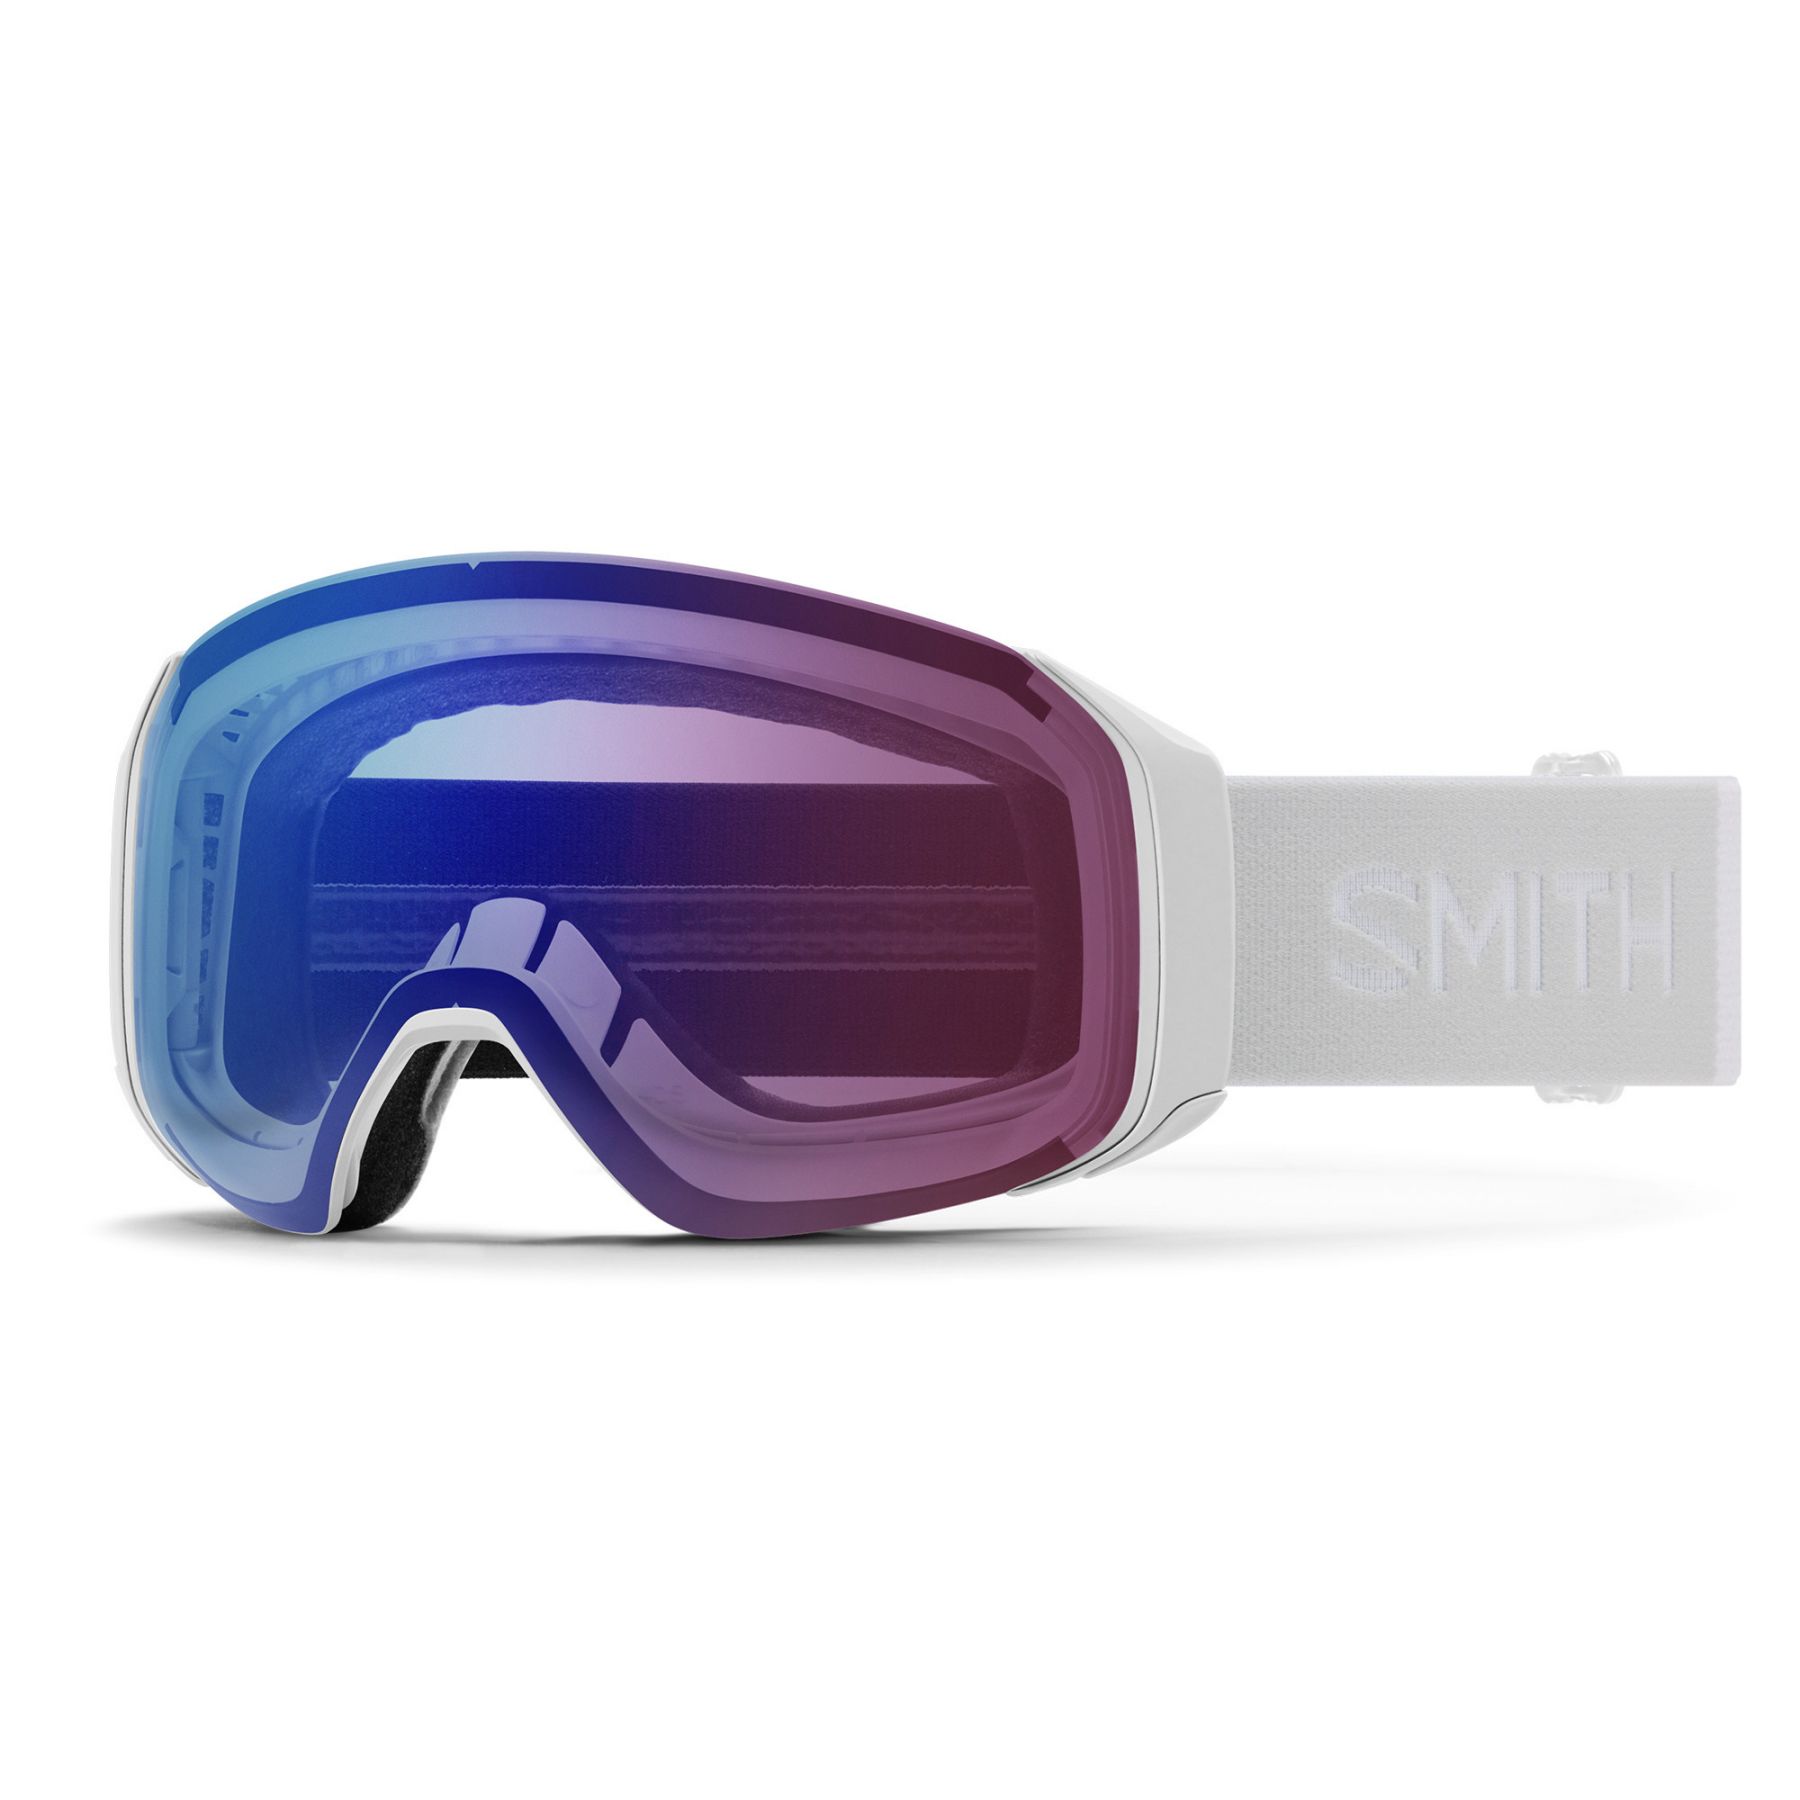 Billede af Smith 4D MAG S, skibrille, hvid hos Skisport.dk